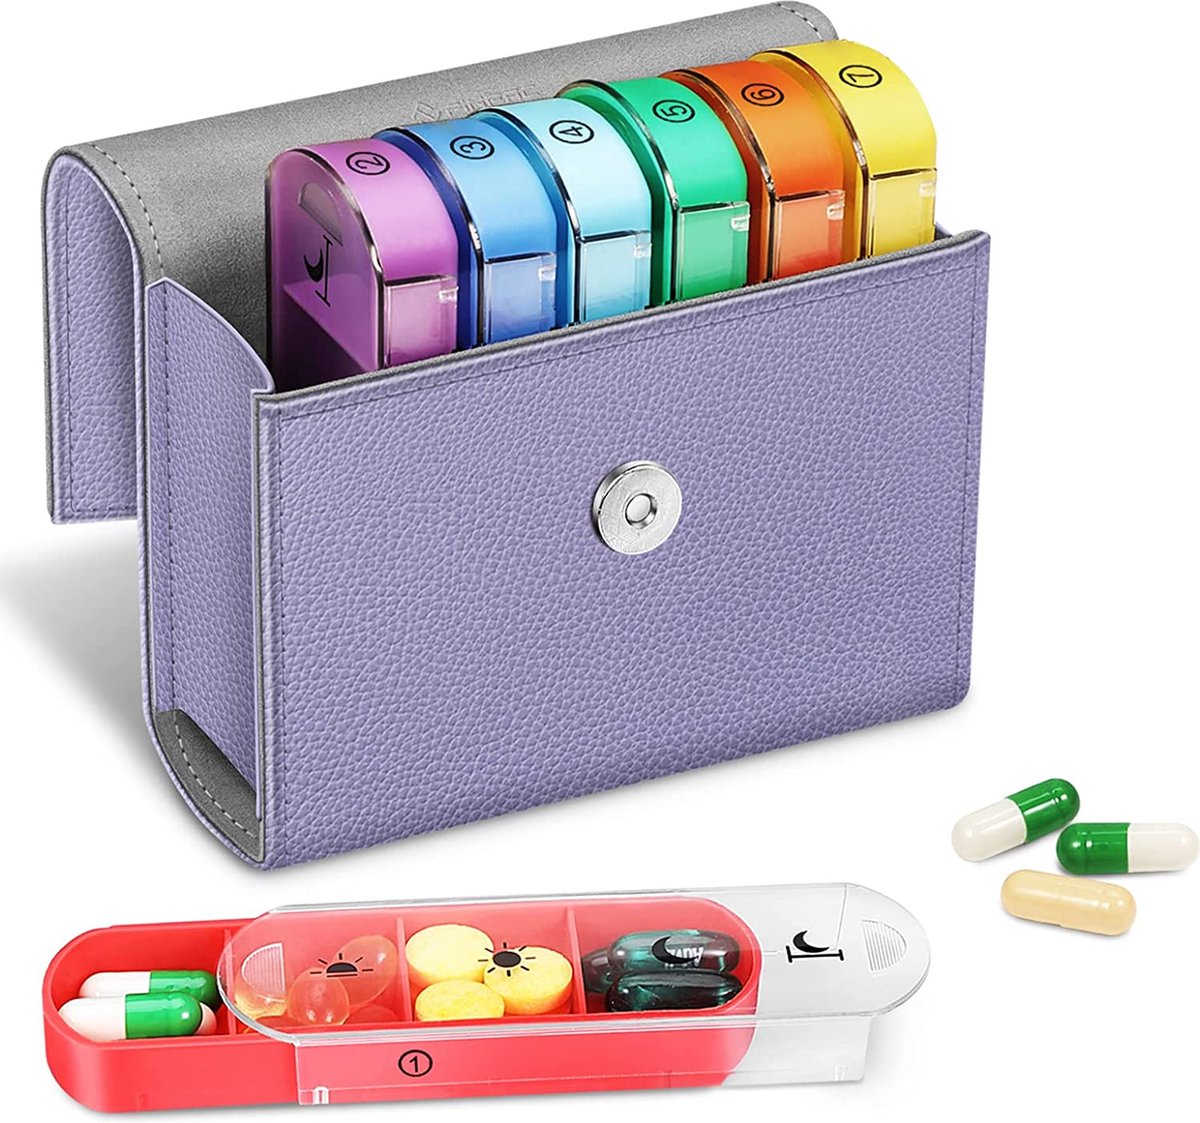 Tablettenbox 7 dagen 4 vakken - pillendoos 4 keer per dag met kunstleren tas en naamkaart medicijnbox voor pillen, vitamine visolie voor 's ochtends 's middags, 's avonds, paars